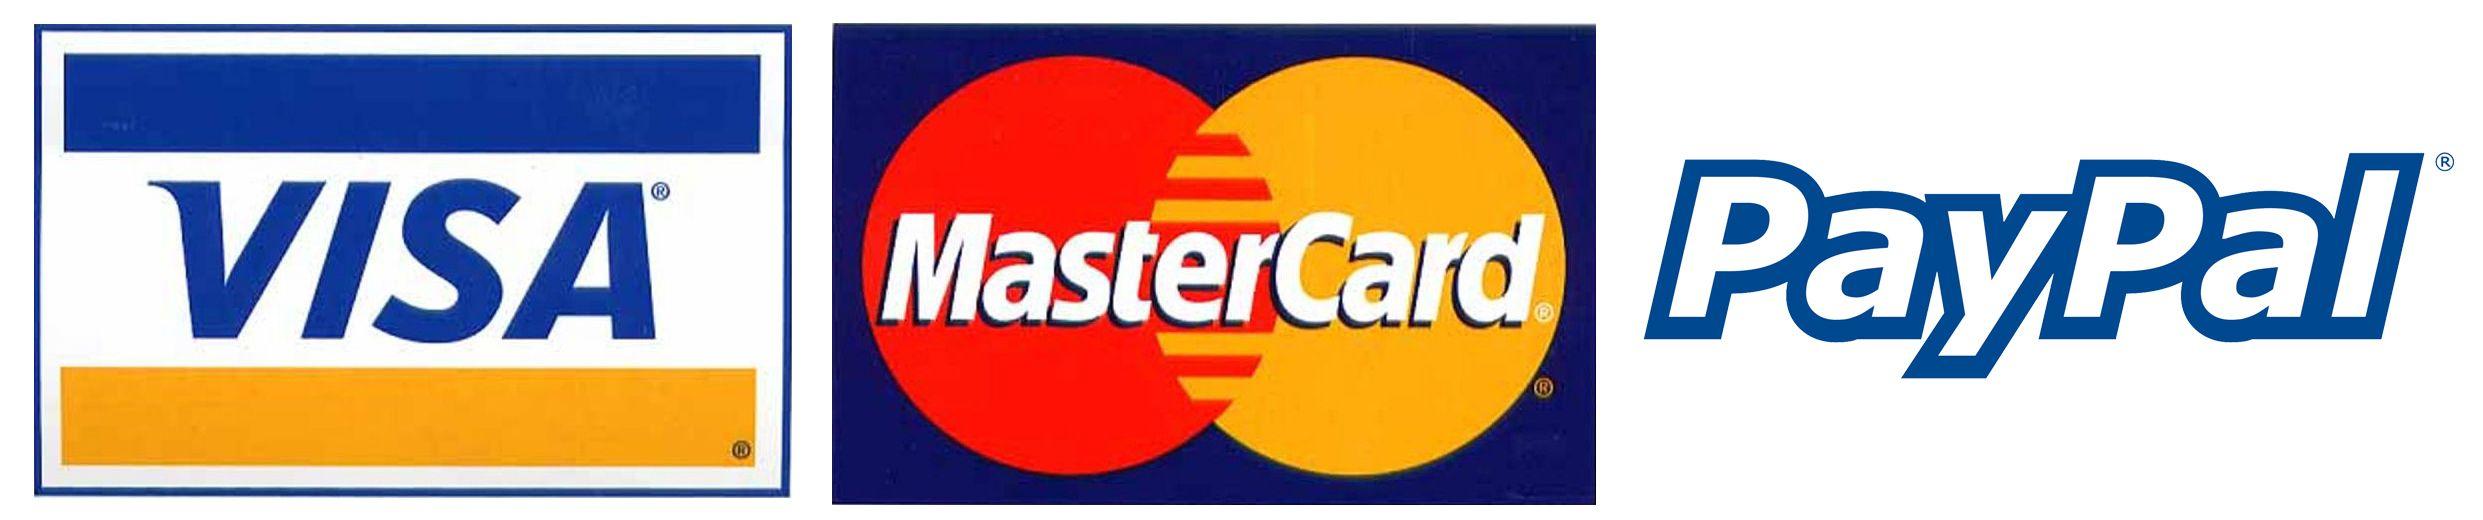 PayPal Visa MasterCard Logo - Payment